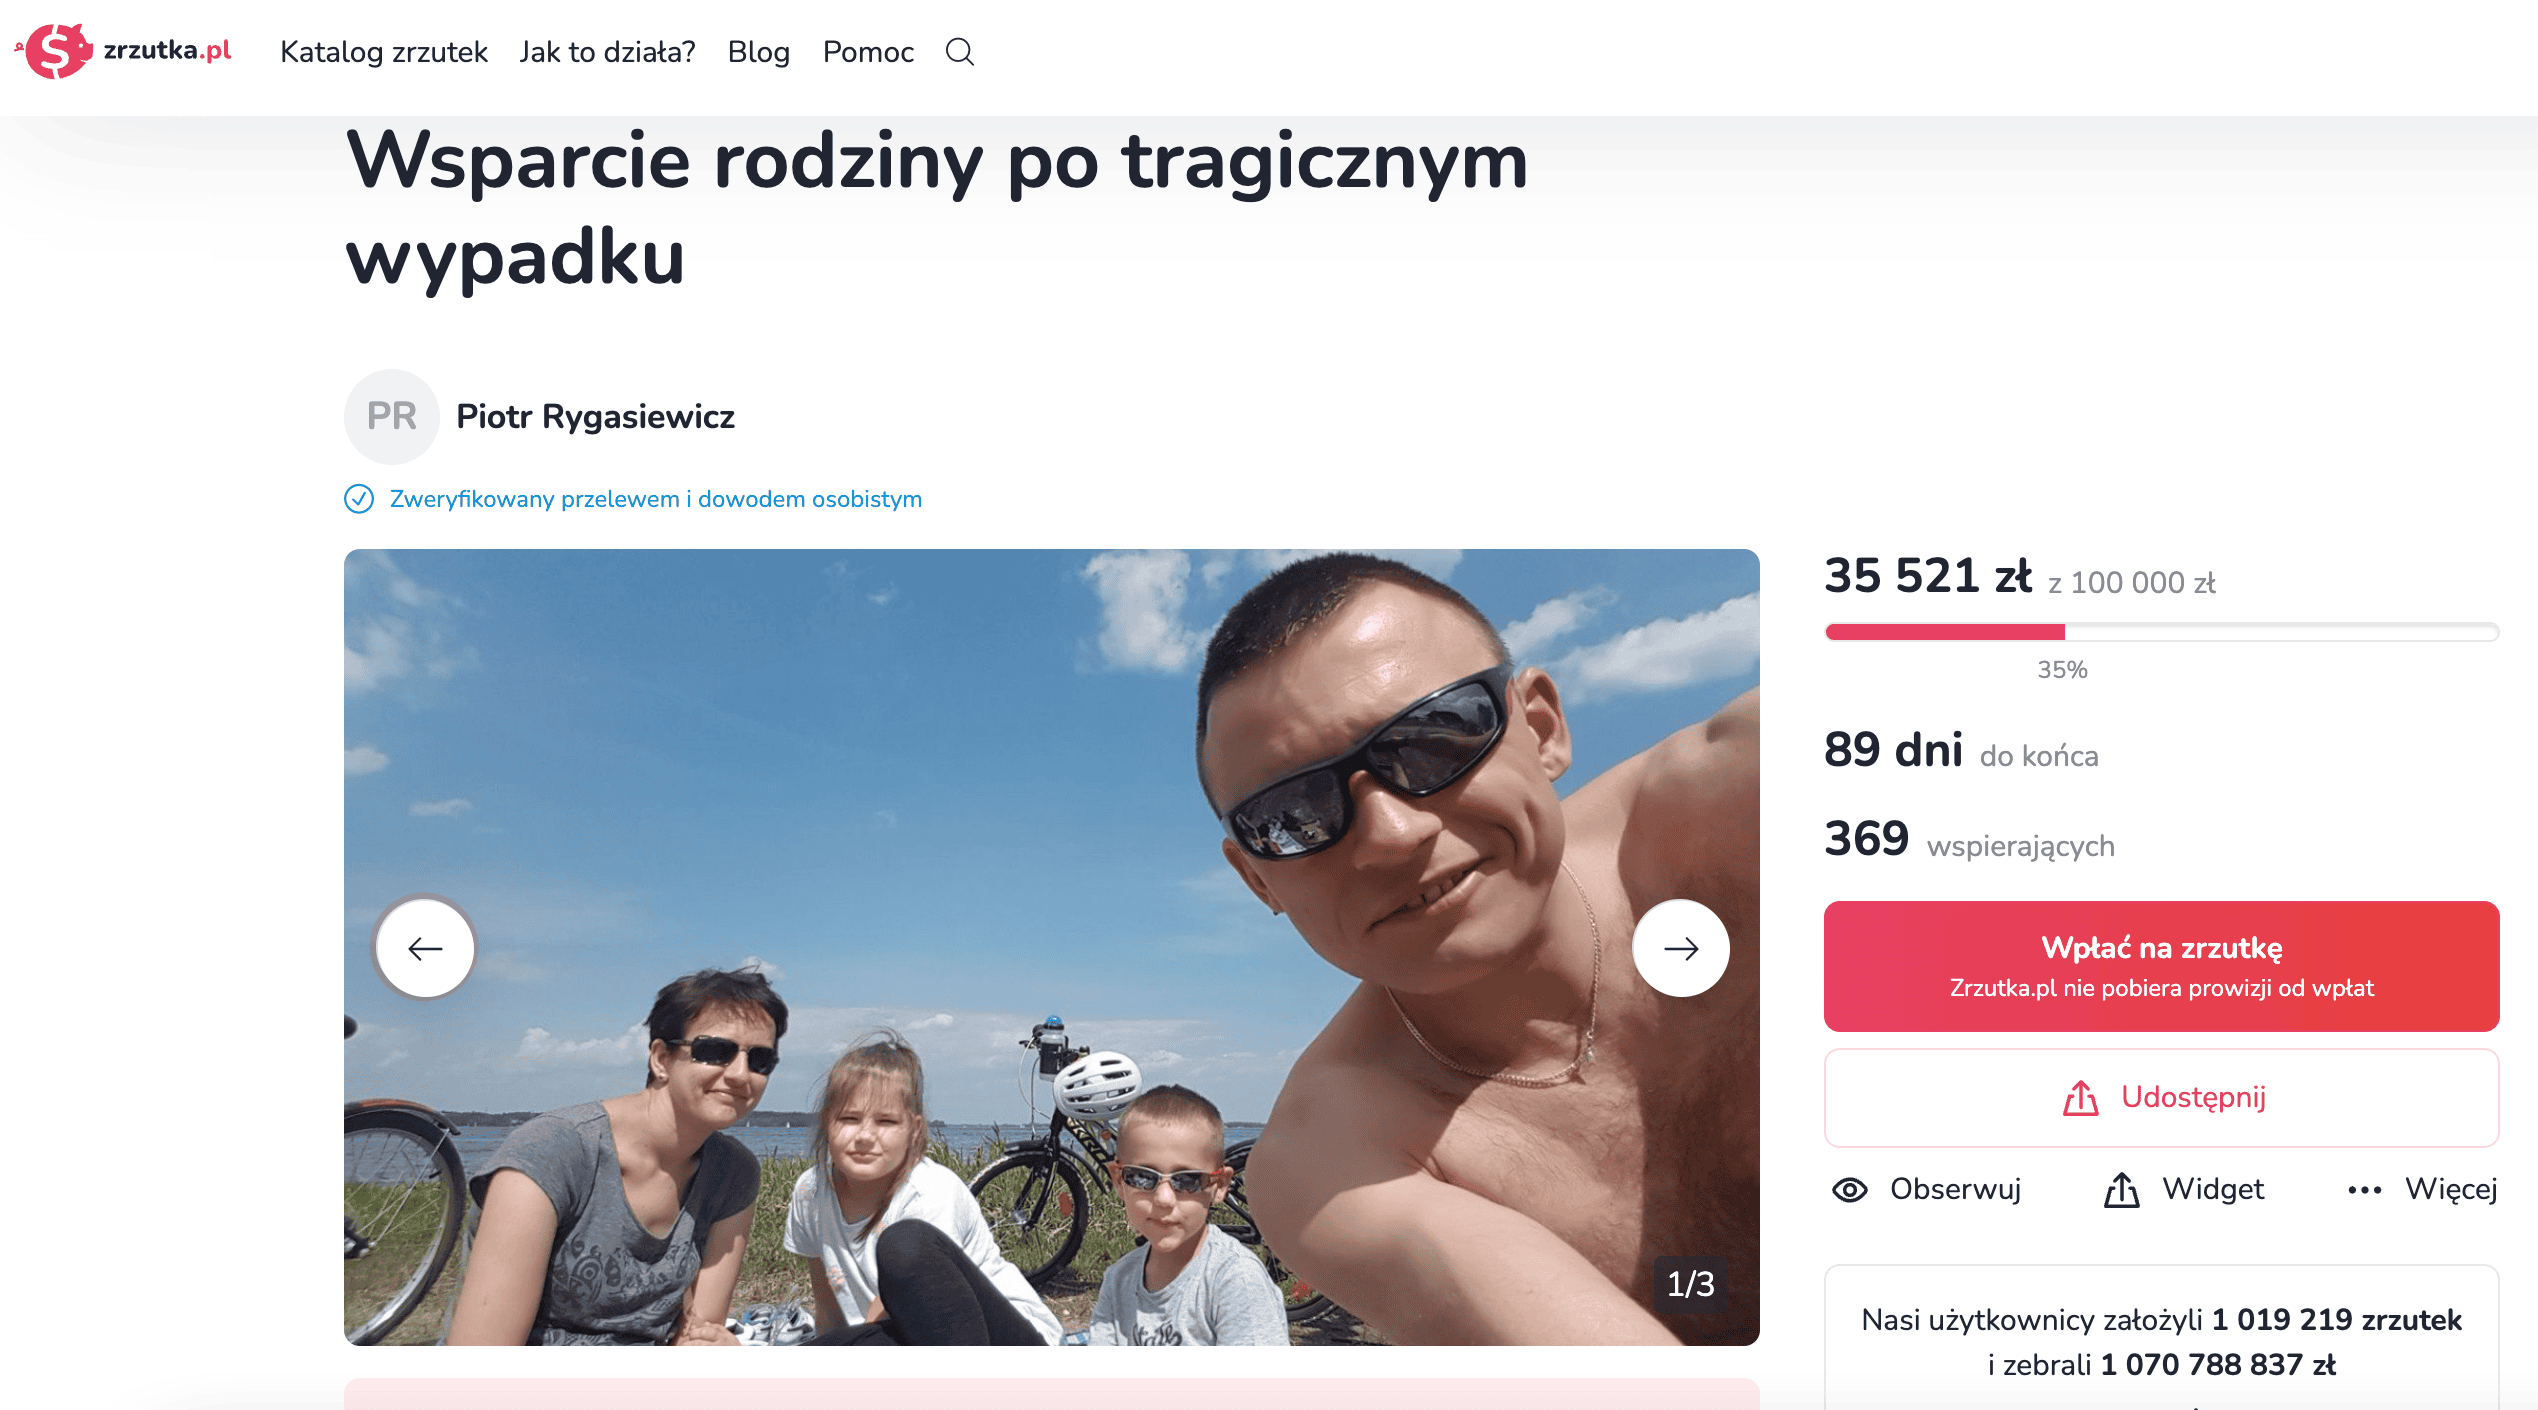 Piotr Zabawski z rodziną, fot. zrzutka.pl